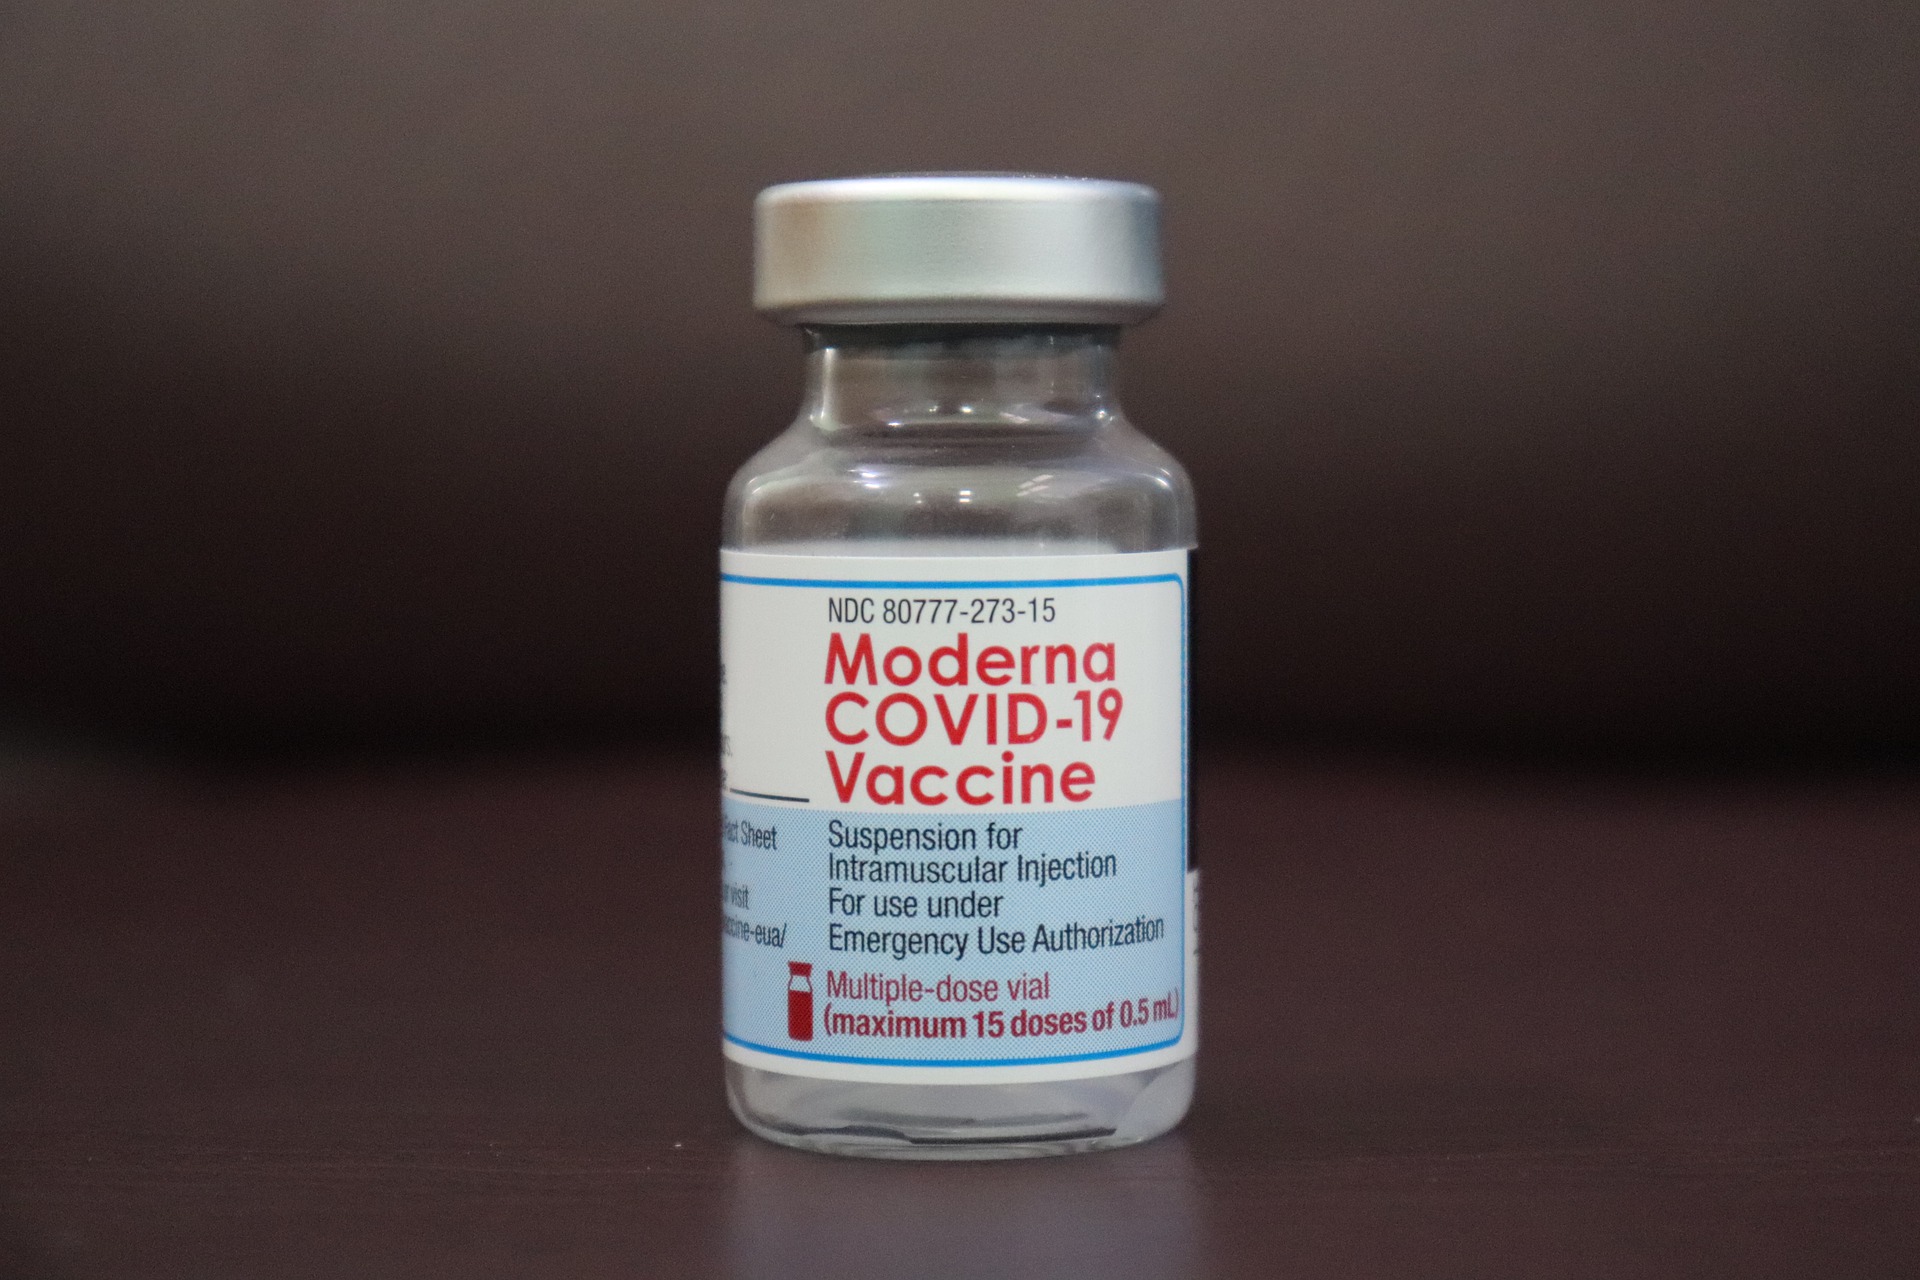 大马将采购辉瑞疫苗 为5至11岁儿童接种 | KLSE Screener